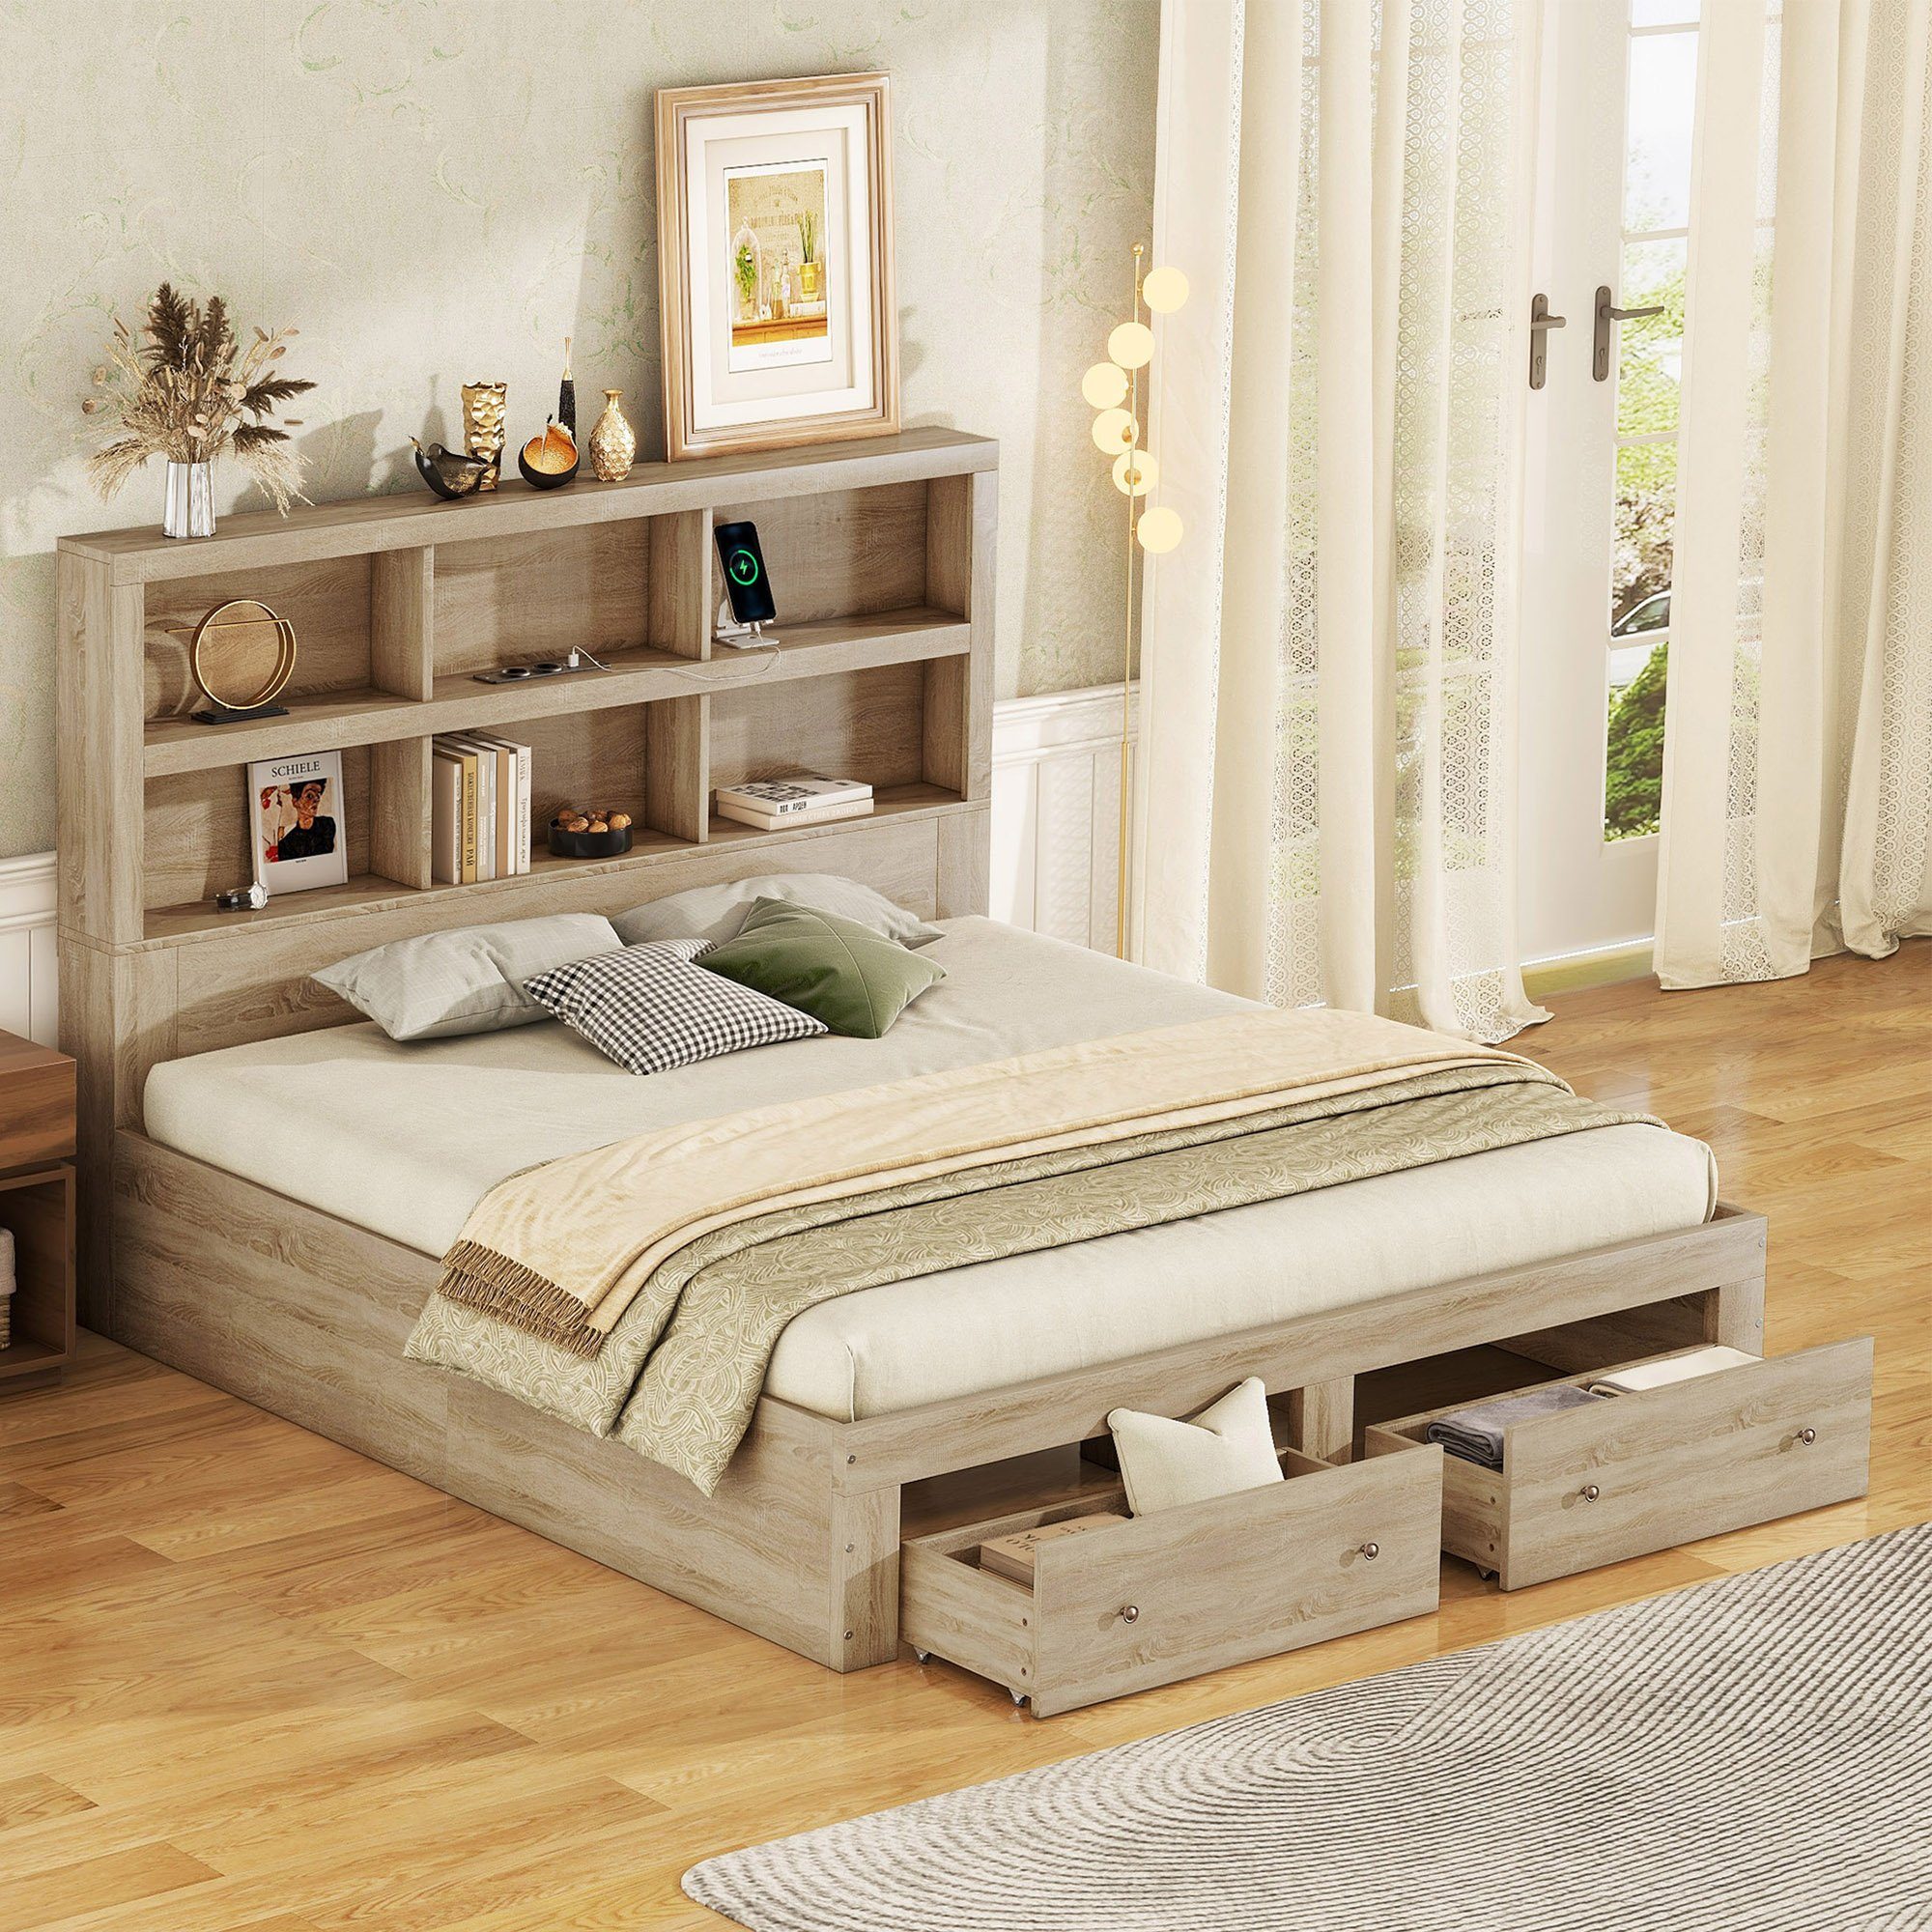 HAUSS SPLOE Bett Doppelbett Funktionsbett Bettrahmen (mit zwei Schubladen am Fußende des Bettes, mit Stauraum 160*200cm)